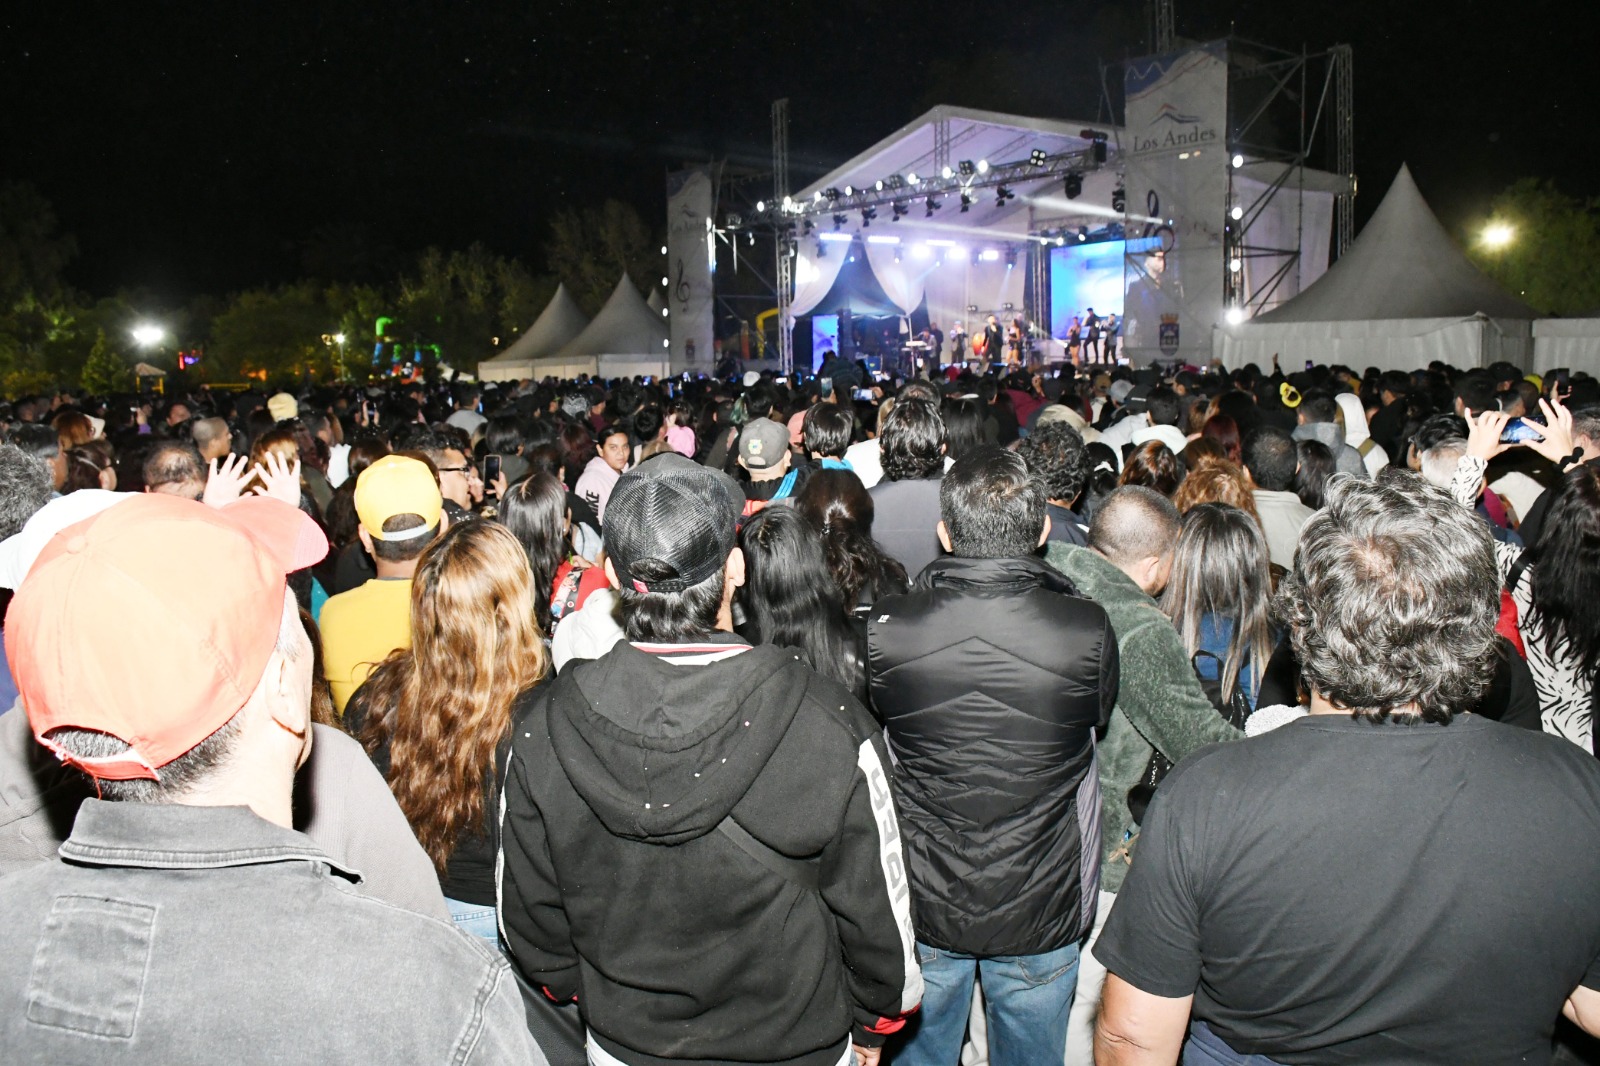 LOS ANDES: Cerca de 45 mil personas asistieron a una semana de Chaya en Los Andes